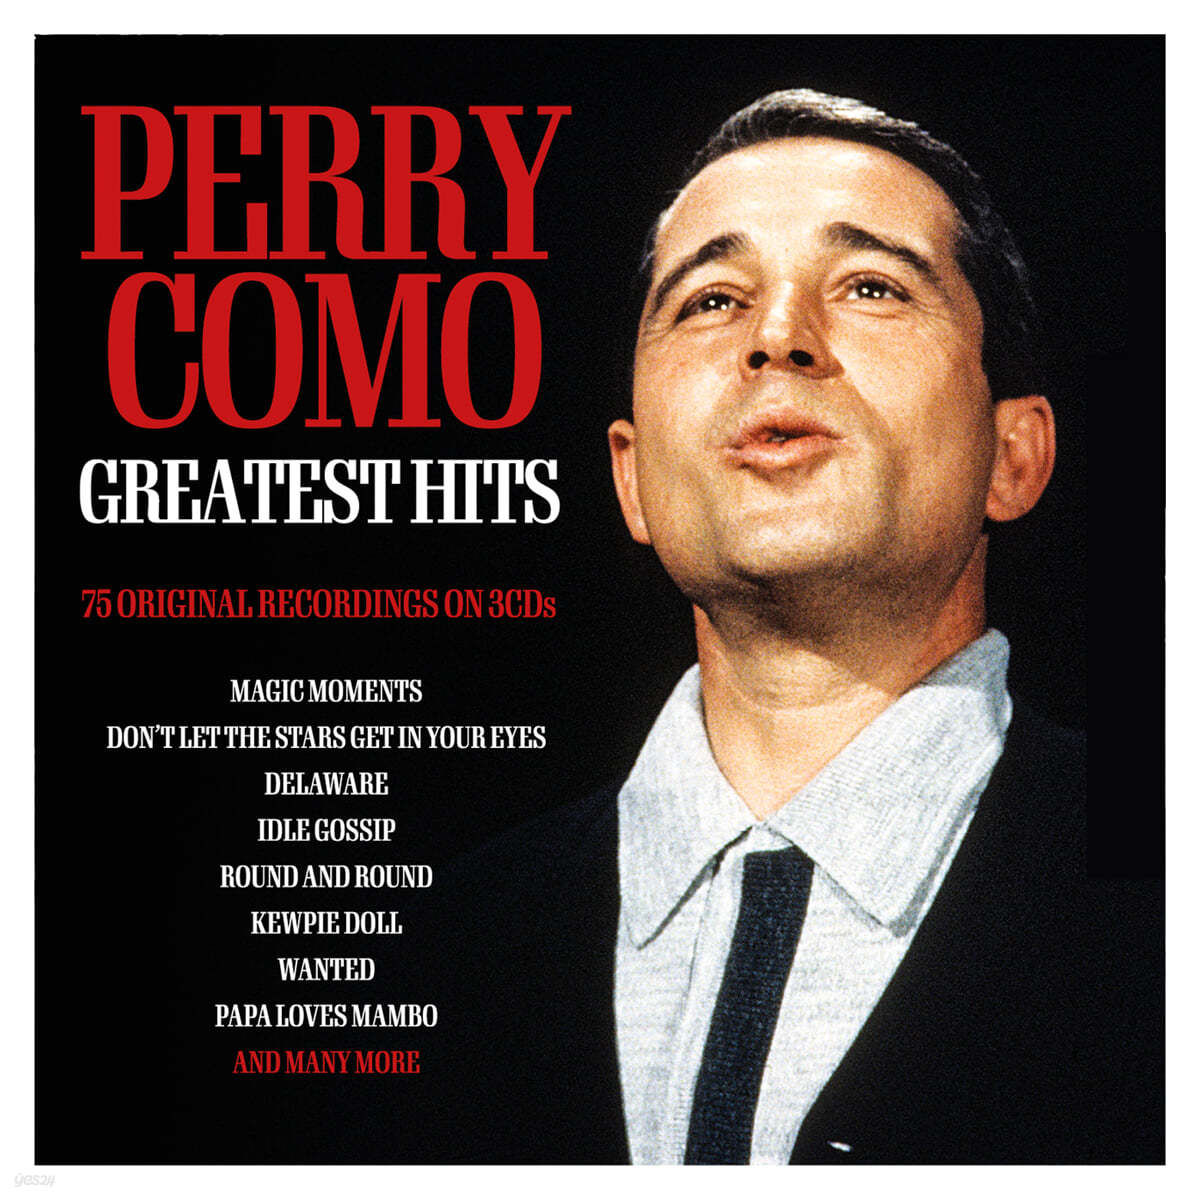 페리 코모 히트곡 모음집 (Perry Como Greatest Hits)